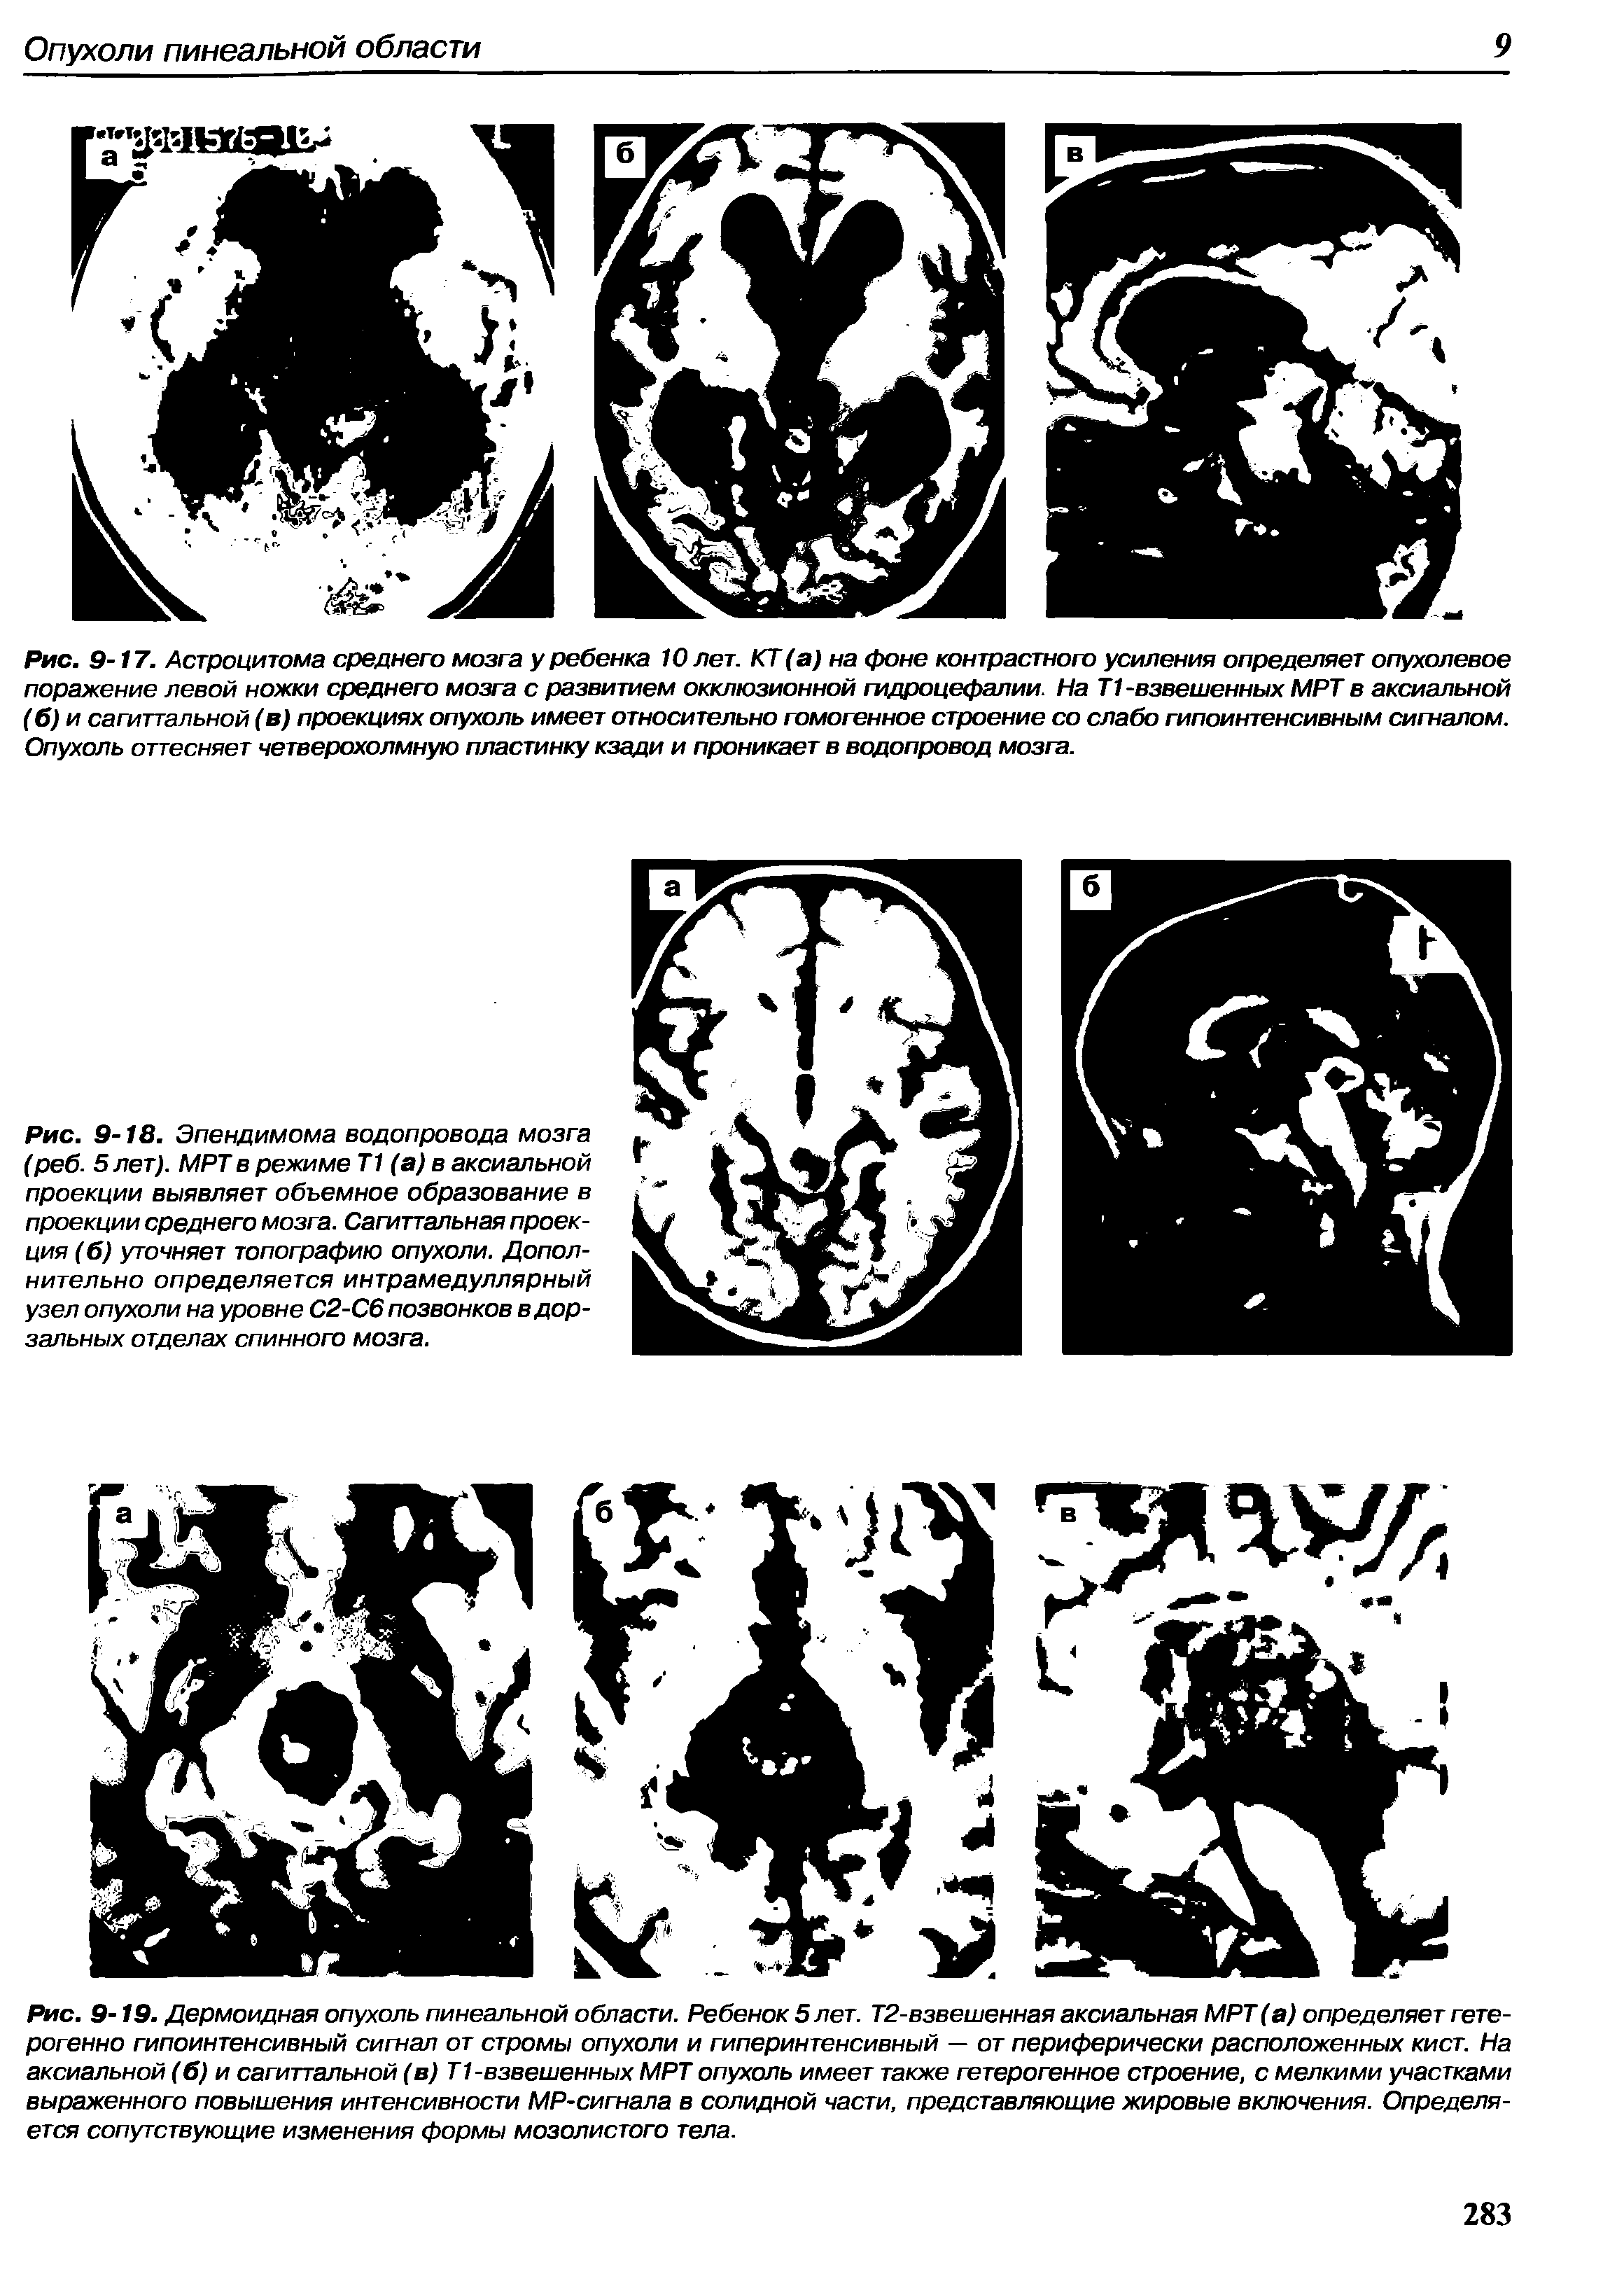 Рис. 9-18. Эпендимома водопровода мозга (реб. 5 лет). МРТ в режиме Т1 (а) в аксиальной проекции выявляет объемное образование в проекции среднего мозга. Сагиттальная проекция (б) уточняет топографию опухоли. Дополнительно определяется интрамедуллярный узел опухоли на уровне С2-С6 позвонков в дорзальных отделах спинного мозга.